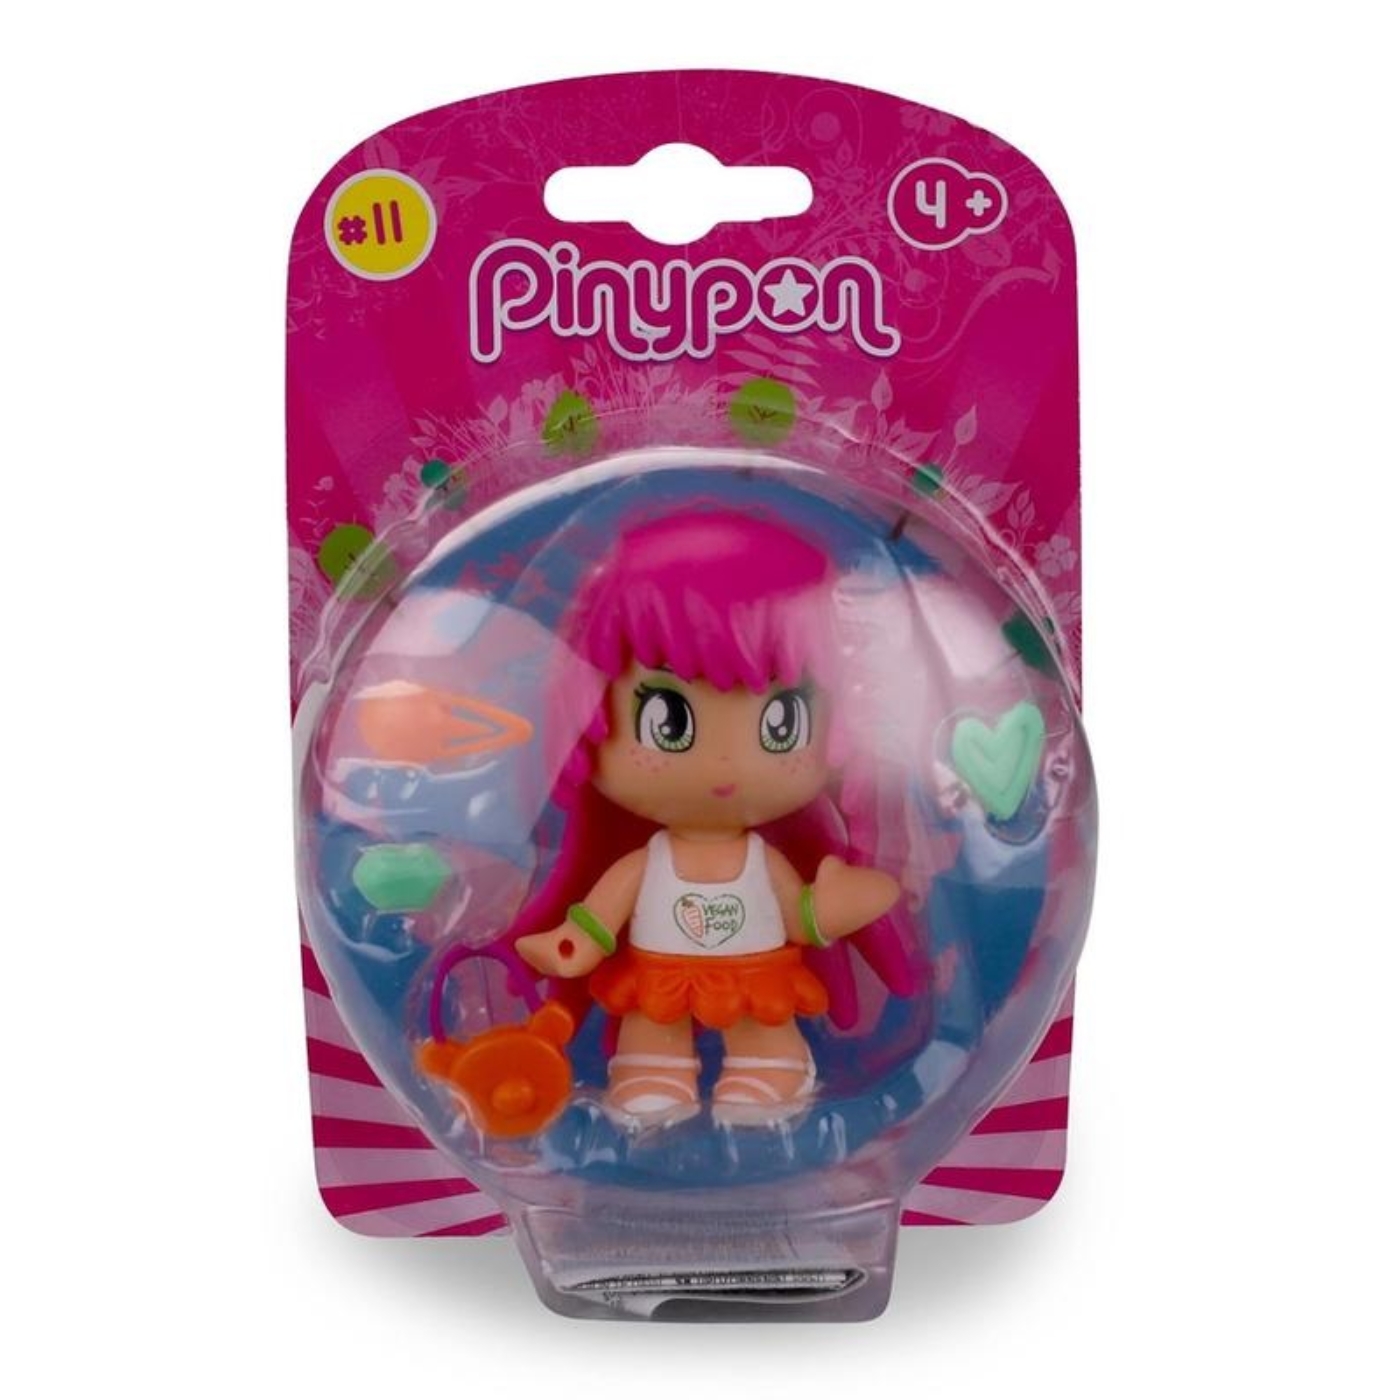 Pinypon - baba rózsaszín hajjal, 11-es széria